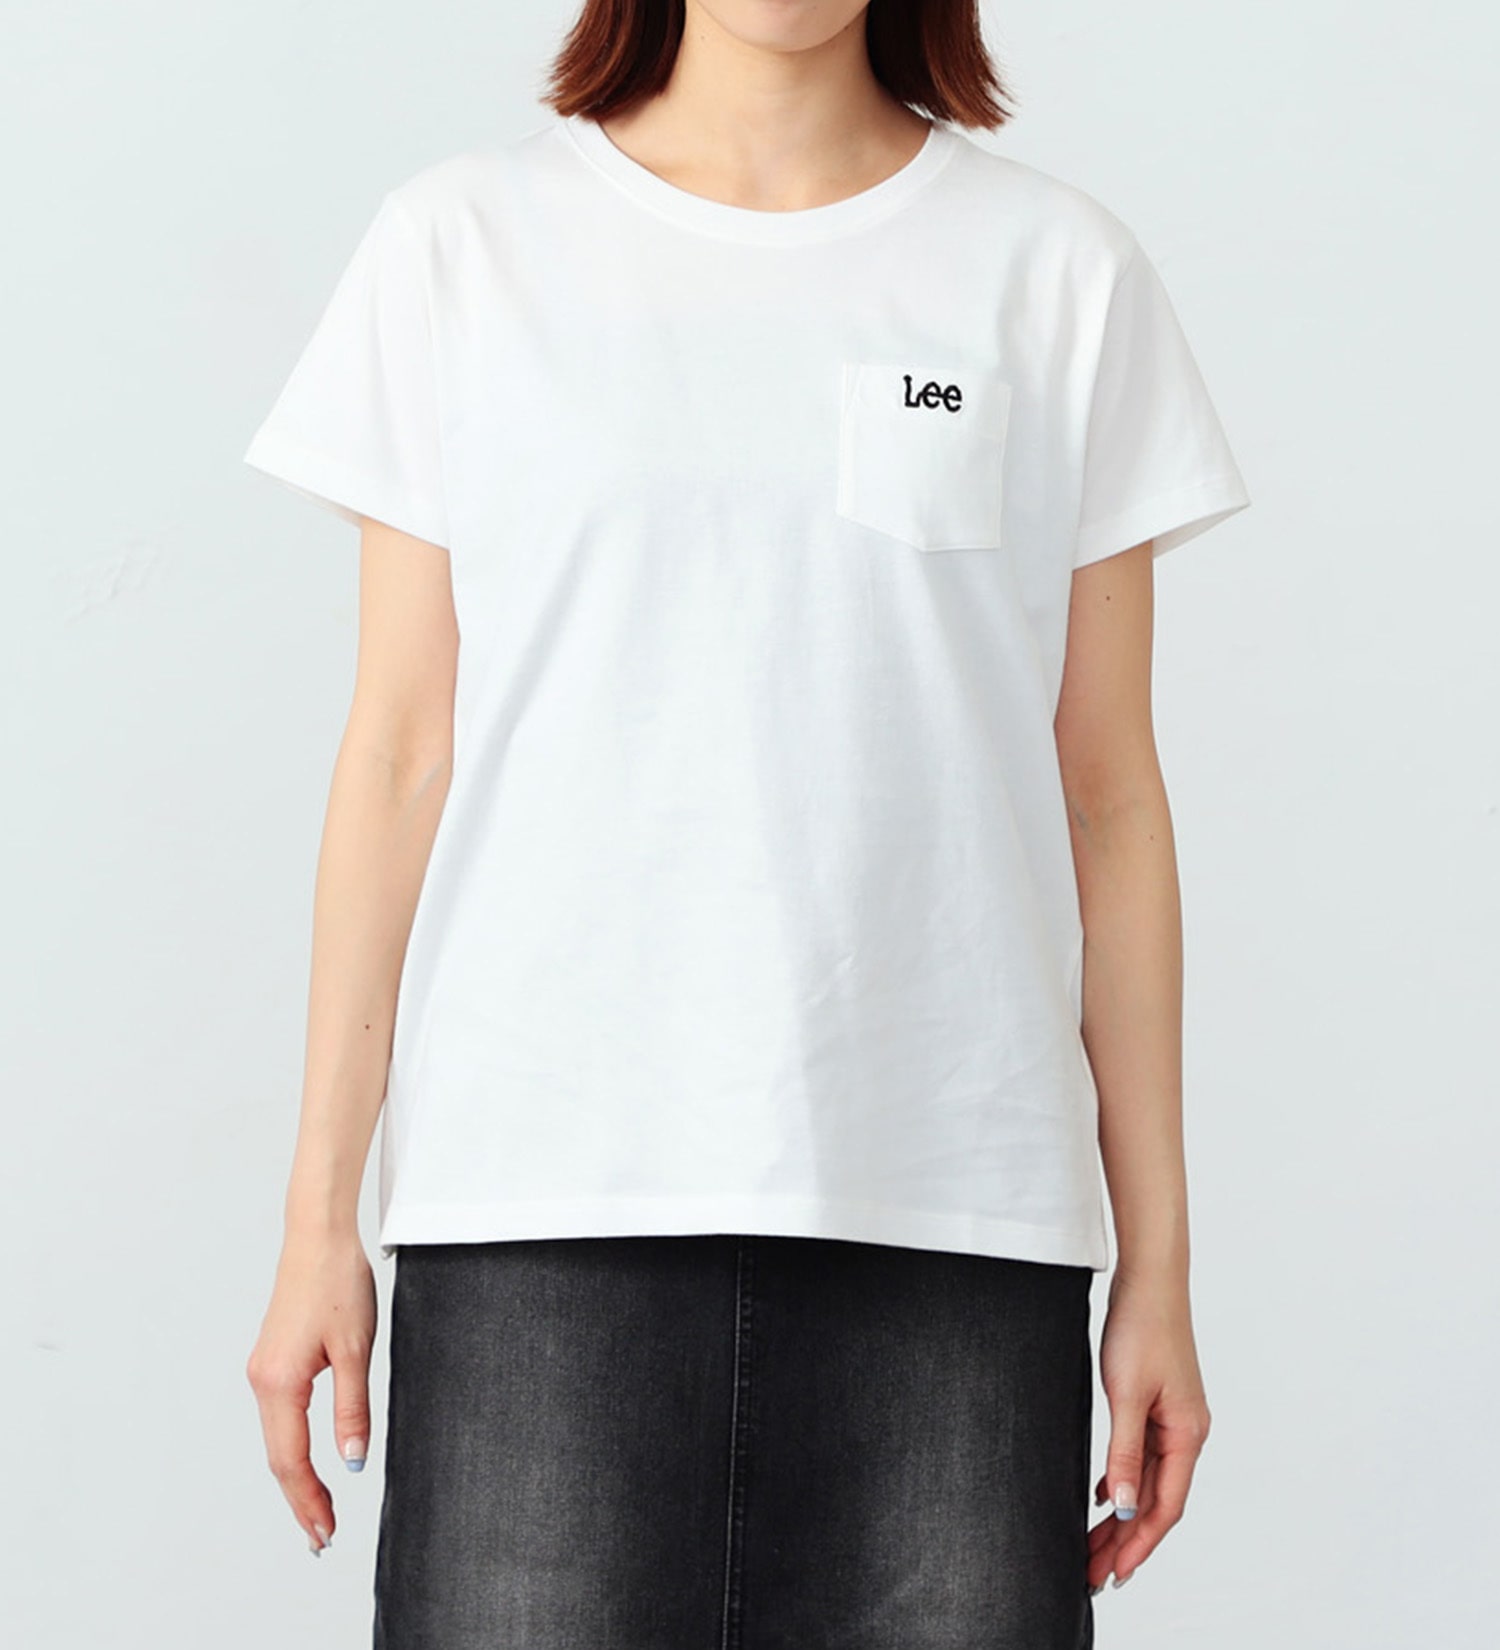 Lee(リー)の【FINAL SALE】ポケットロゴ刺繍 ハーフスリーブTee|トップス/Tシャツ/カットソー/レディース|ホワイト